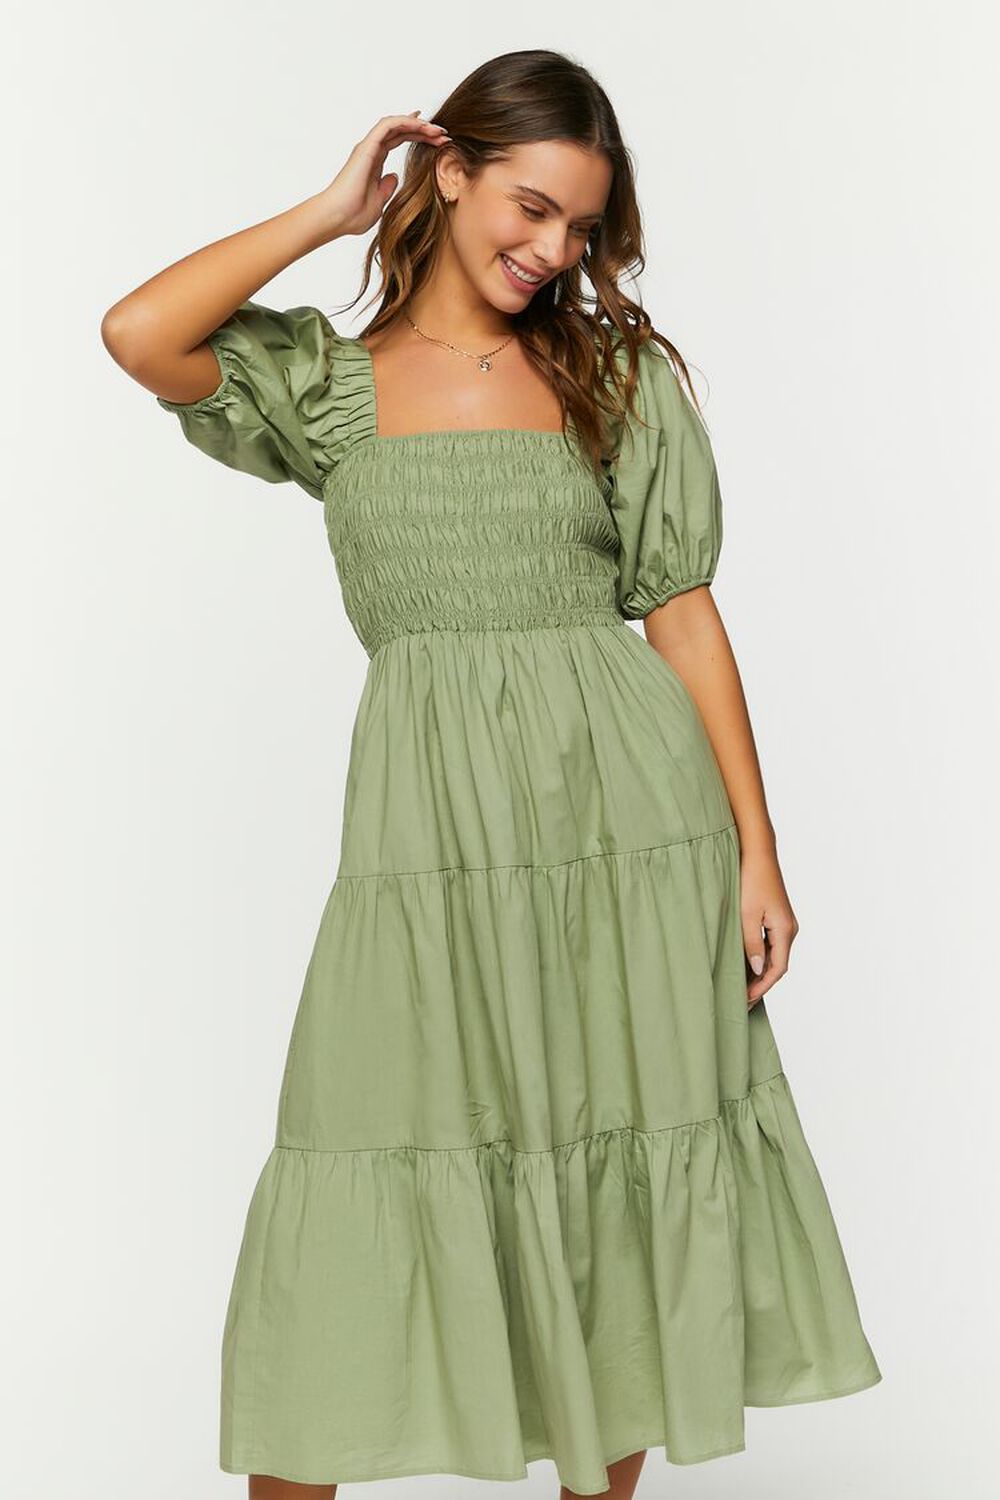 OLIVE Smocked Puff-Sleeve Dress, image 1